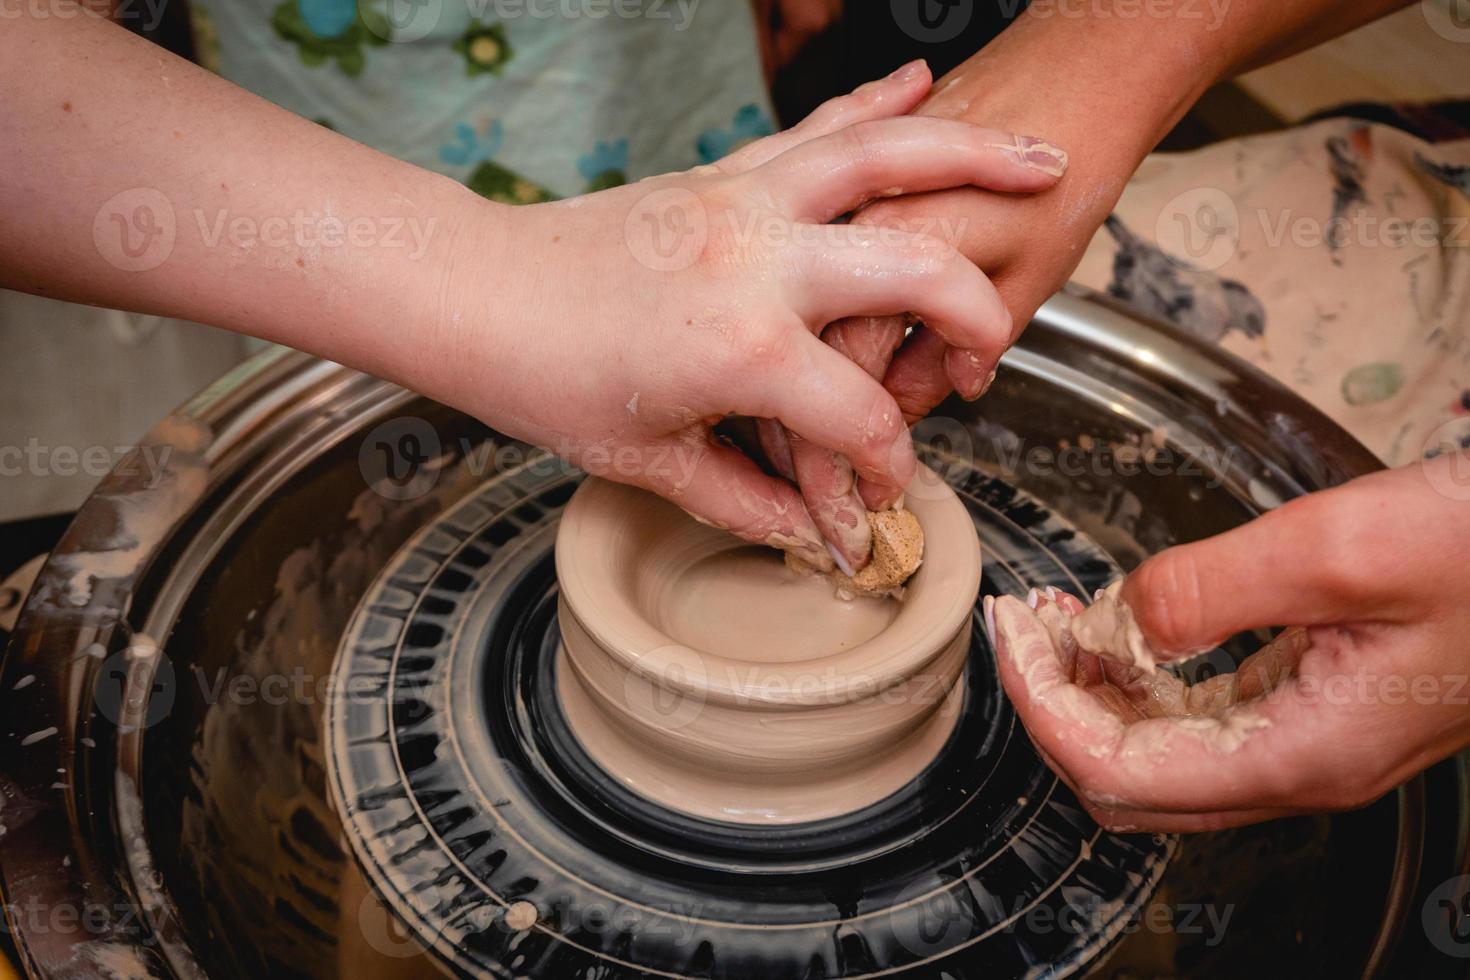 alfarero trabajando en torno de alfarero con arcilla. proceso de elaboración de vajillas de cerámica en taller de alfarería. foto